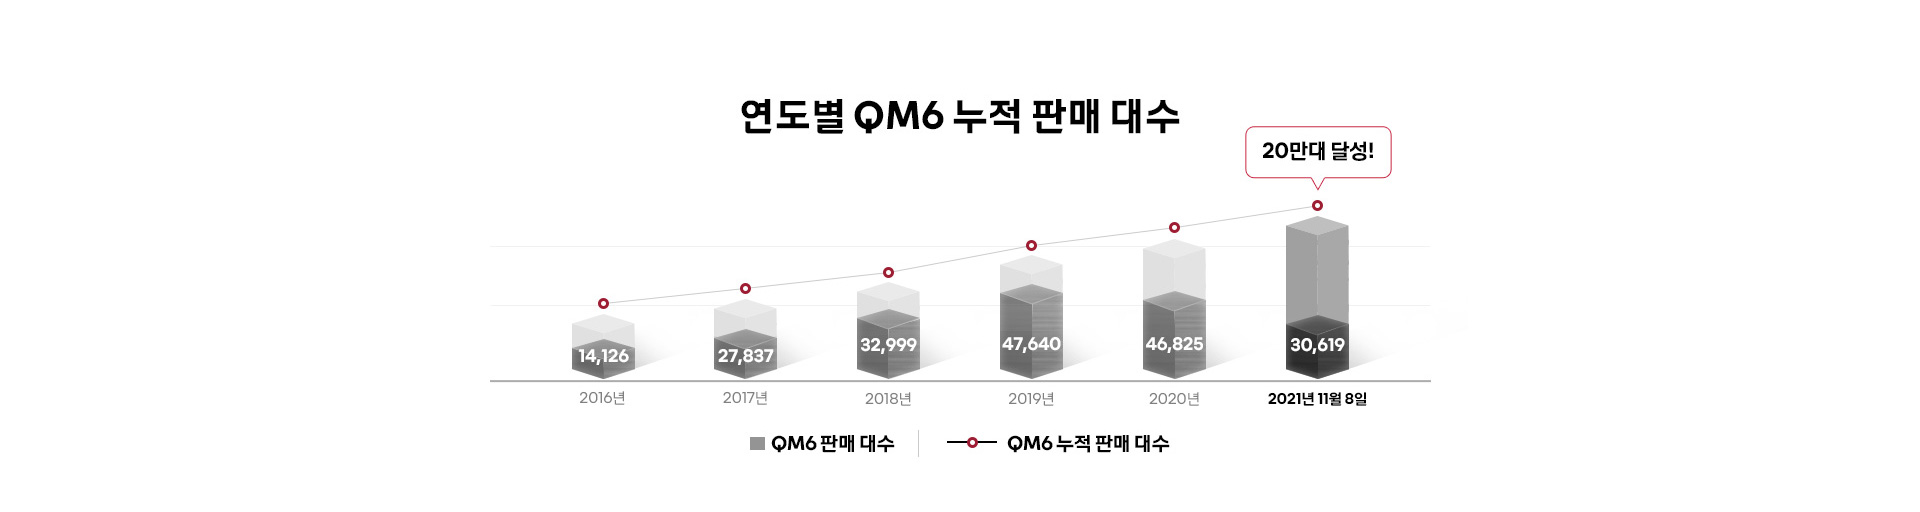 연도별 QM6 누적 판매 대수